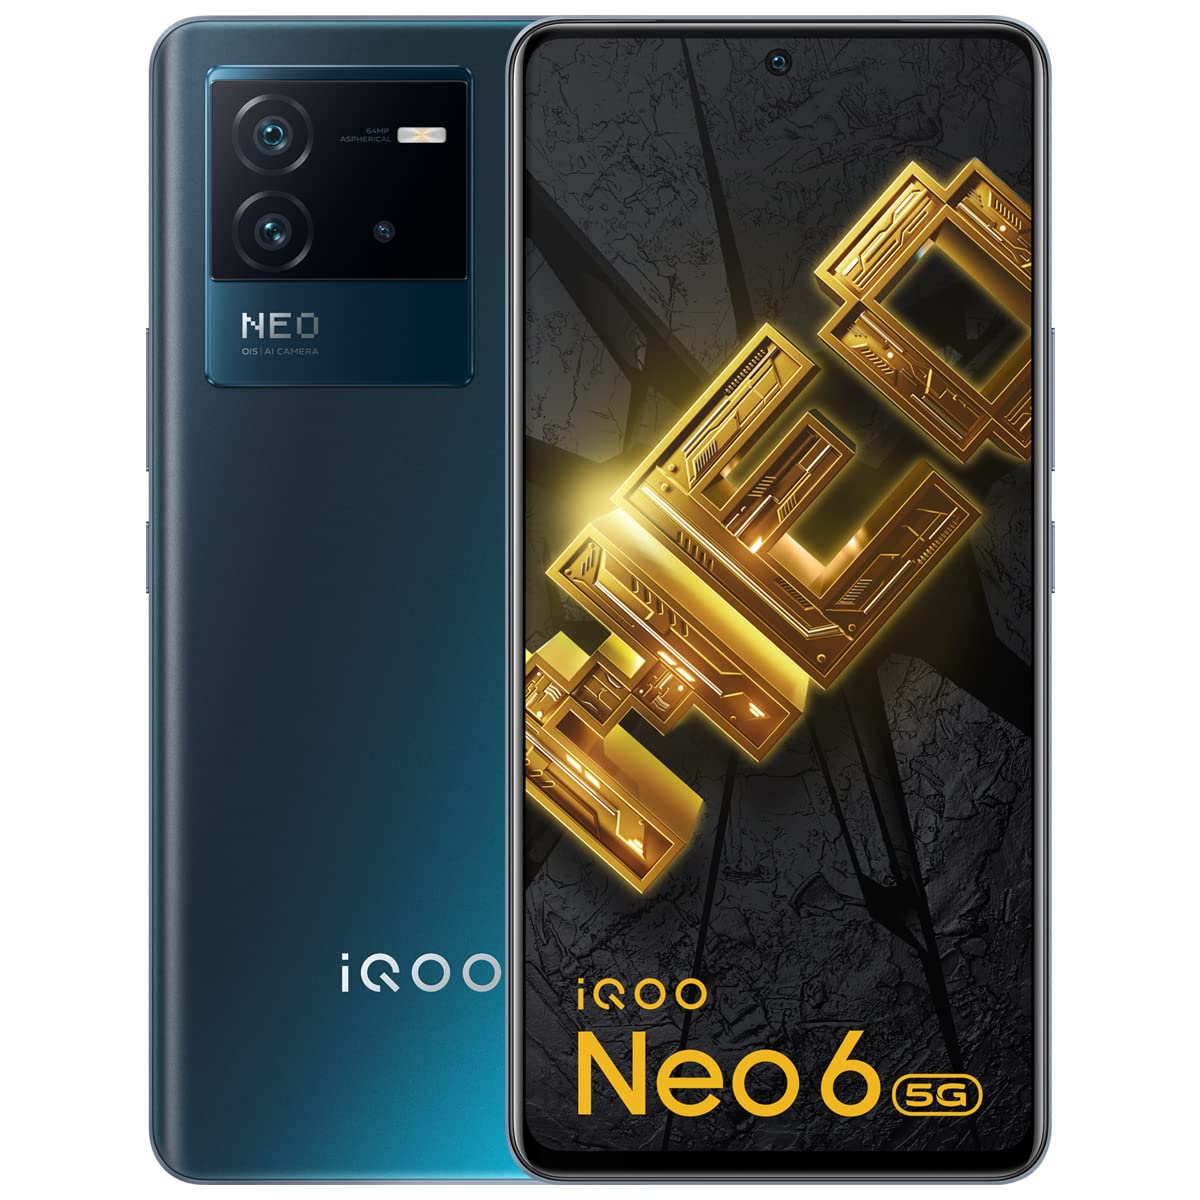 iQOO का एक और शानदार फोन लॉन्च, ऑफर में सीधे मिल रहा है 10 हजार का डिस्काउंट